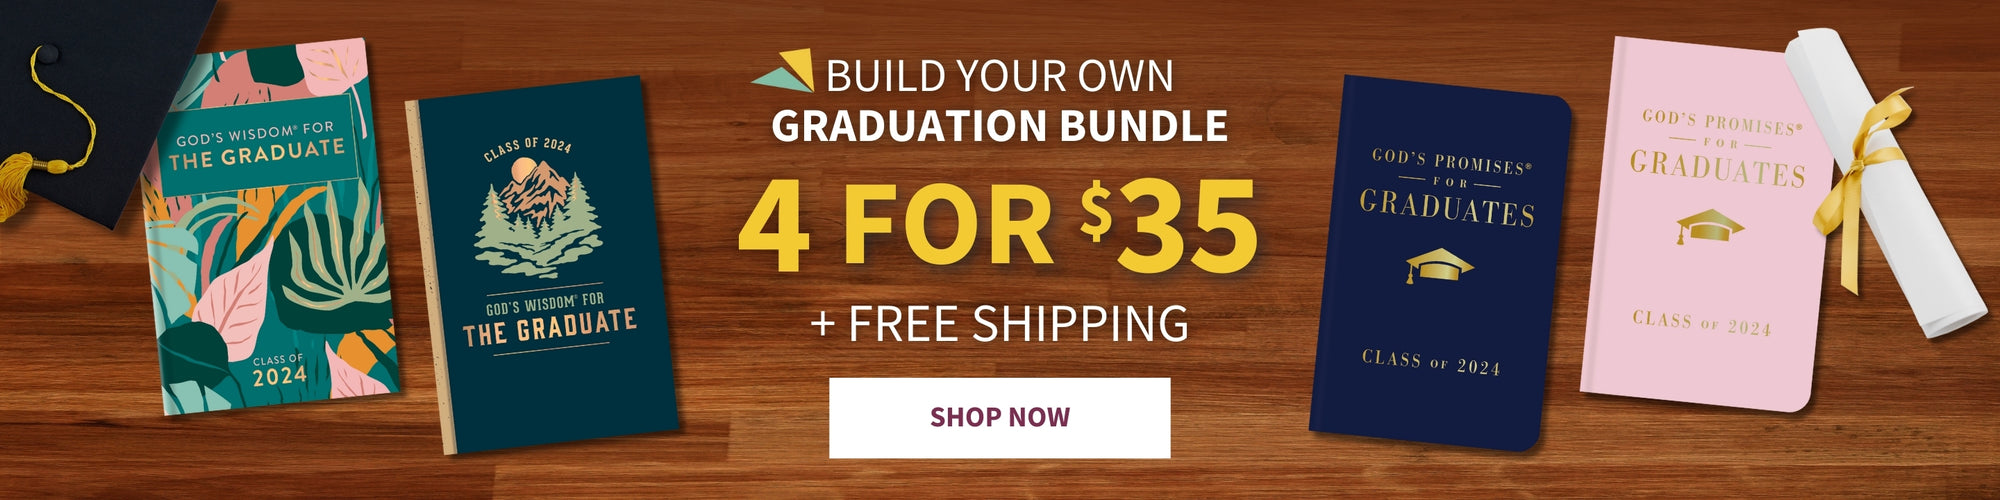 Build Your Own Graduation Bundle 4 for $35